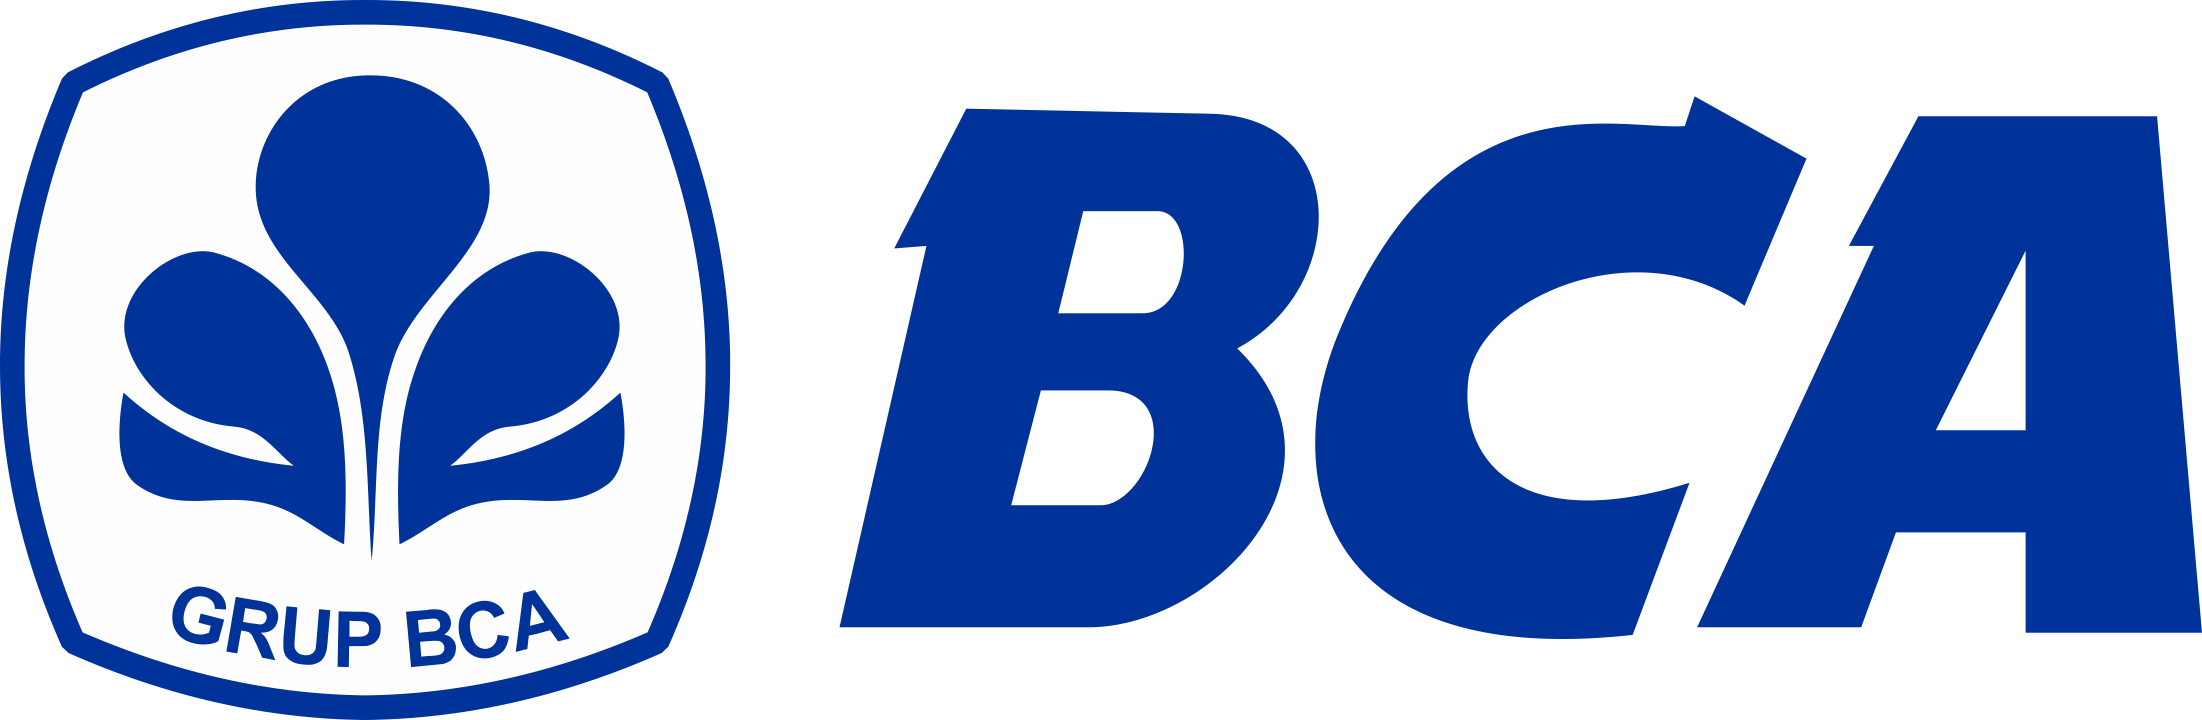 Bank-BCA-Logo-PNG-720p-FileVector69-1-1-1-1-2-1-1-2-1-1.png